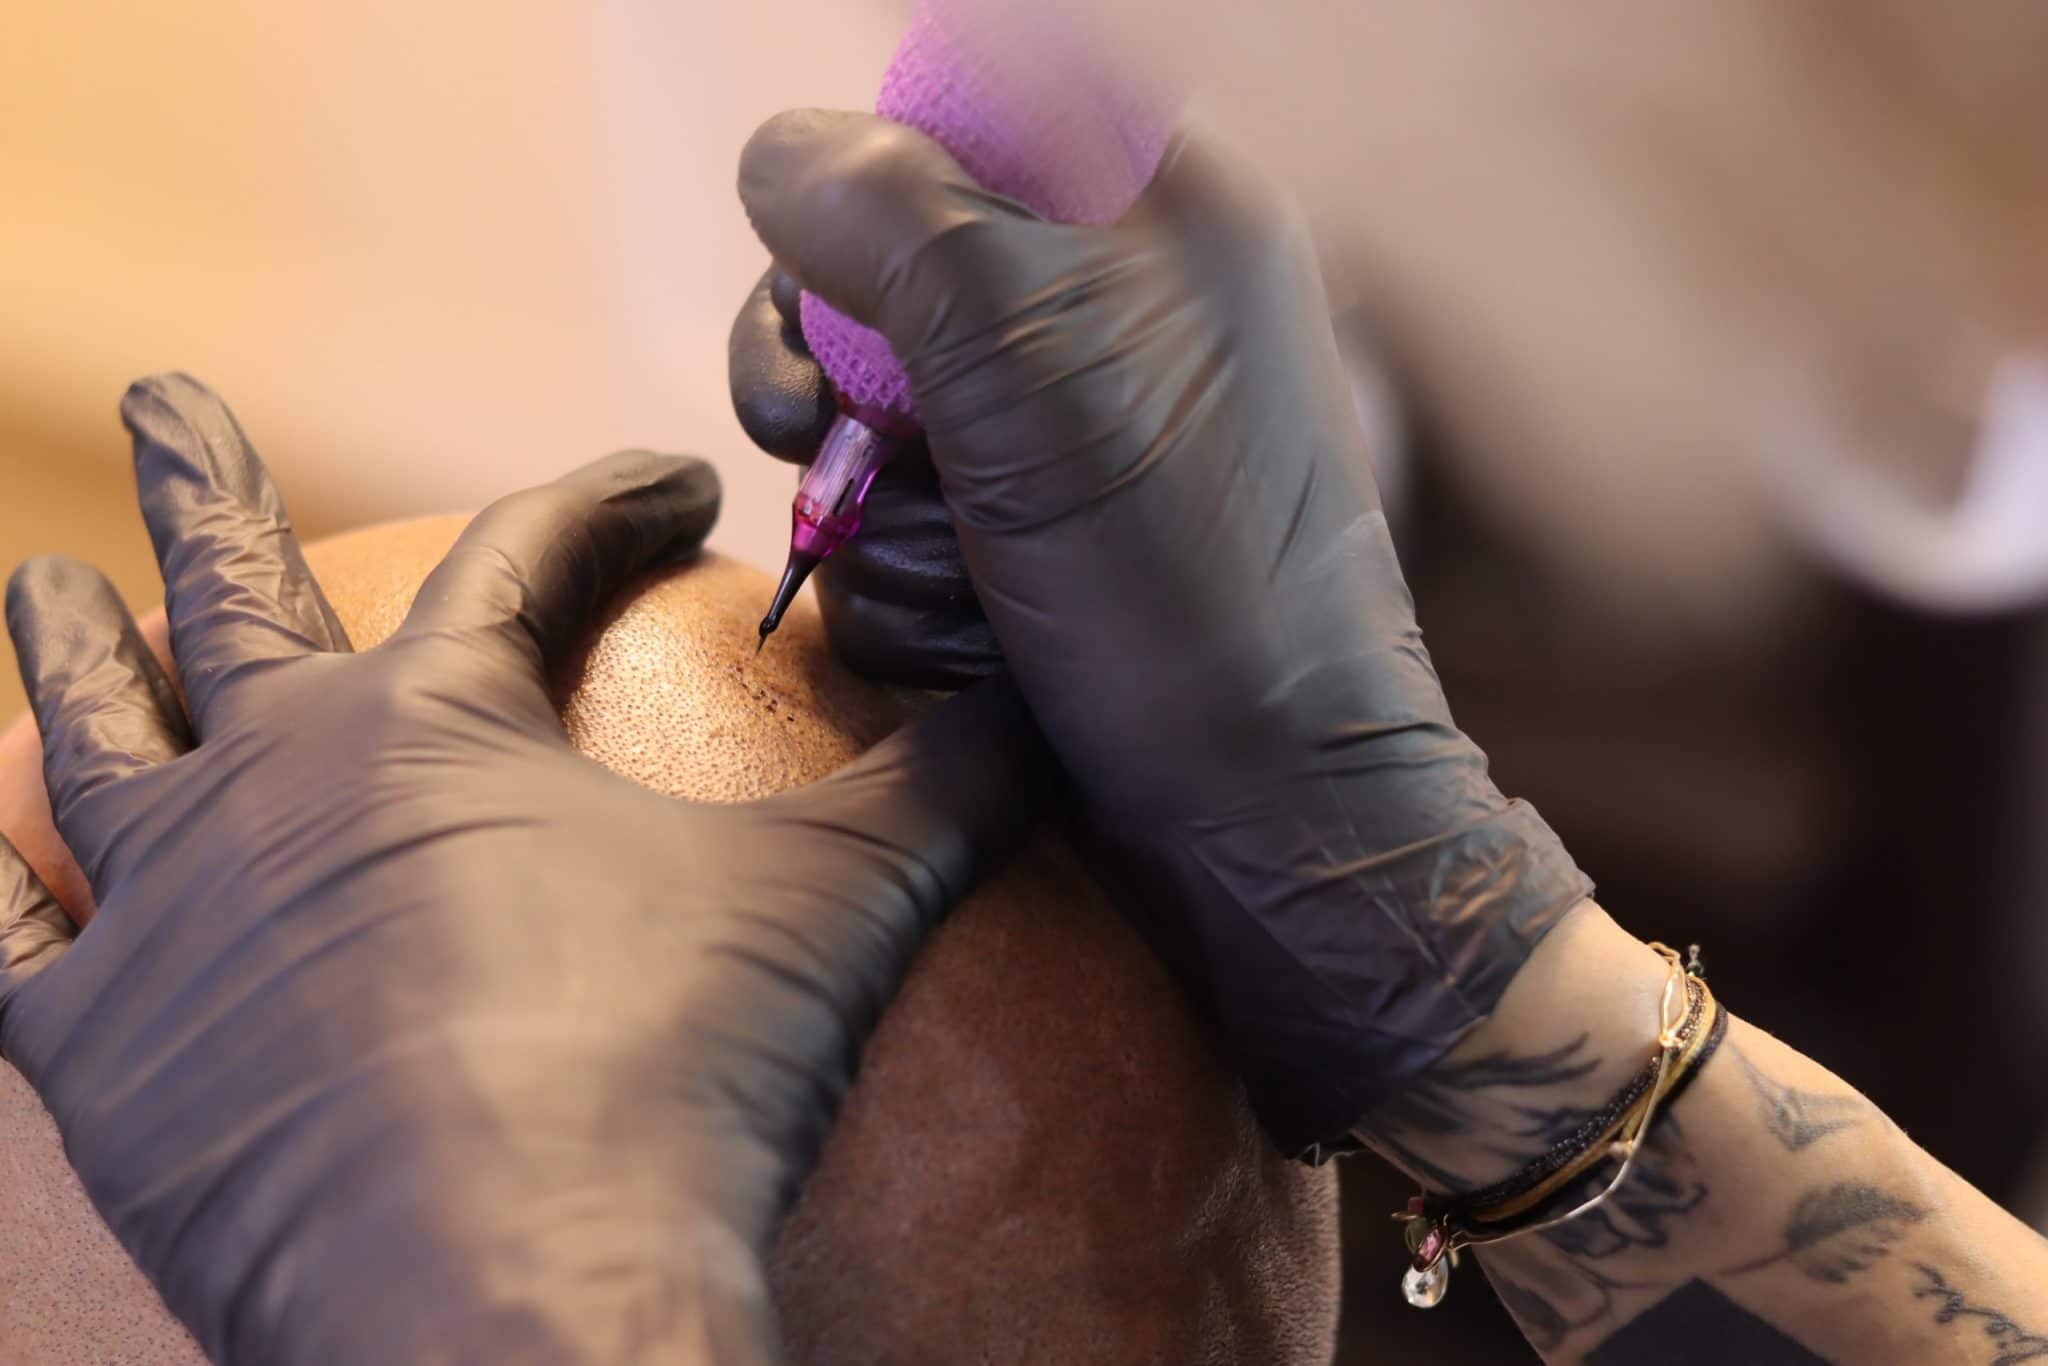 Une séance de tricopigmentation, tatouage pour camoufler la chute capillaire